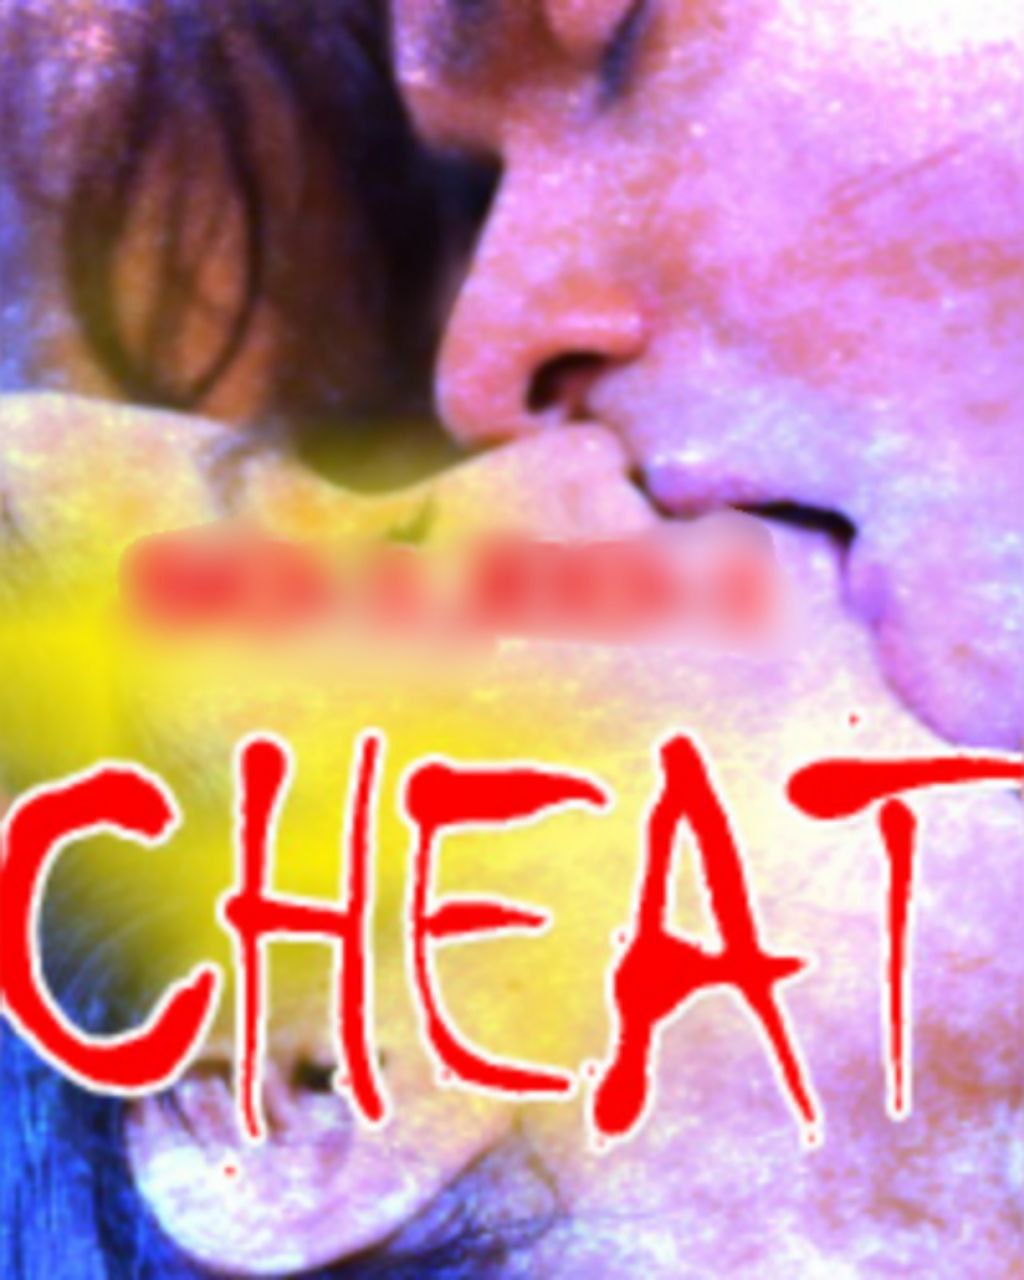 Cheat (2022) S01E02